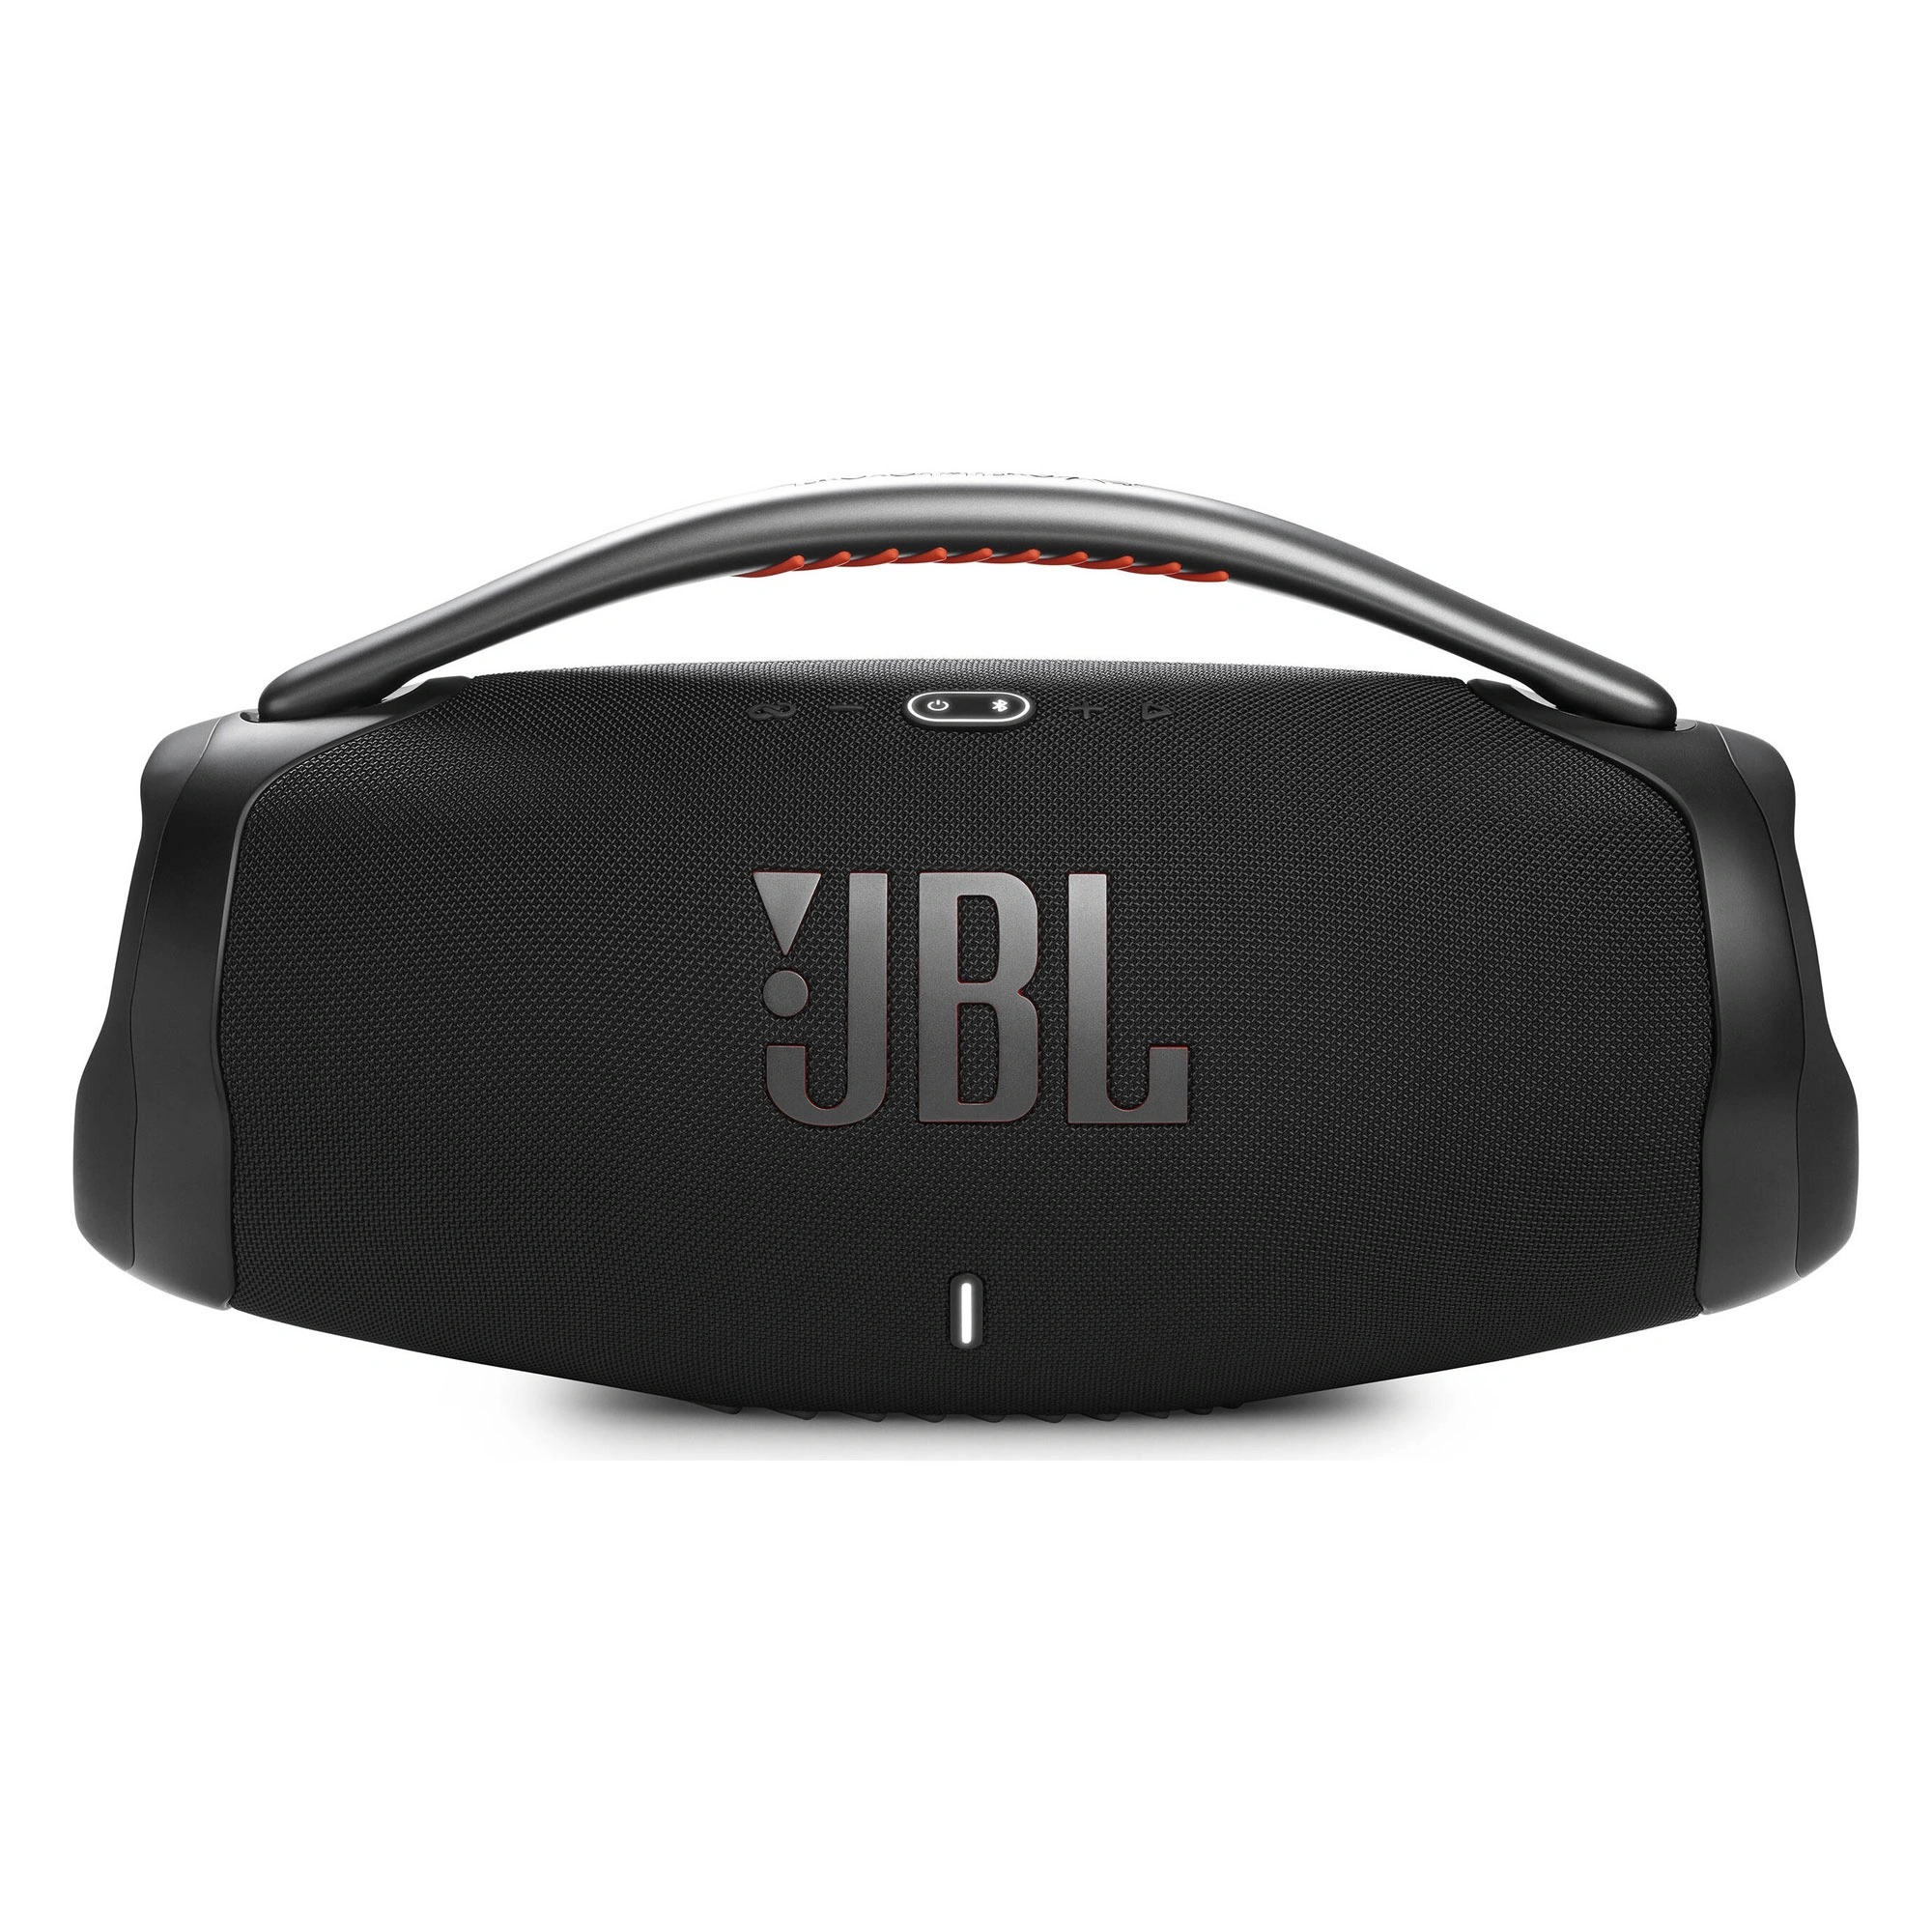 Портативная акустика JBL Boombox 3 Black (JBLBOOMBOX3BLKEP) lenovo k3 wireless bt speaker портативный беспроводной стерео динамик аудиоплеер 3d стерео объемный звук с длительным сроком службы